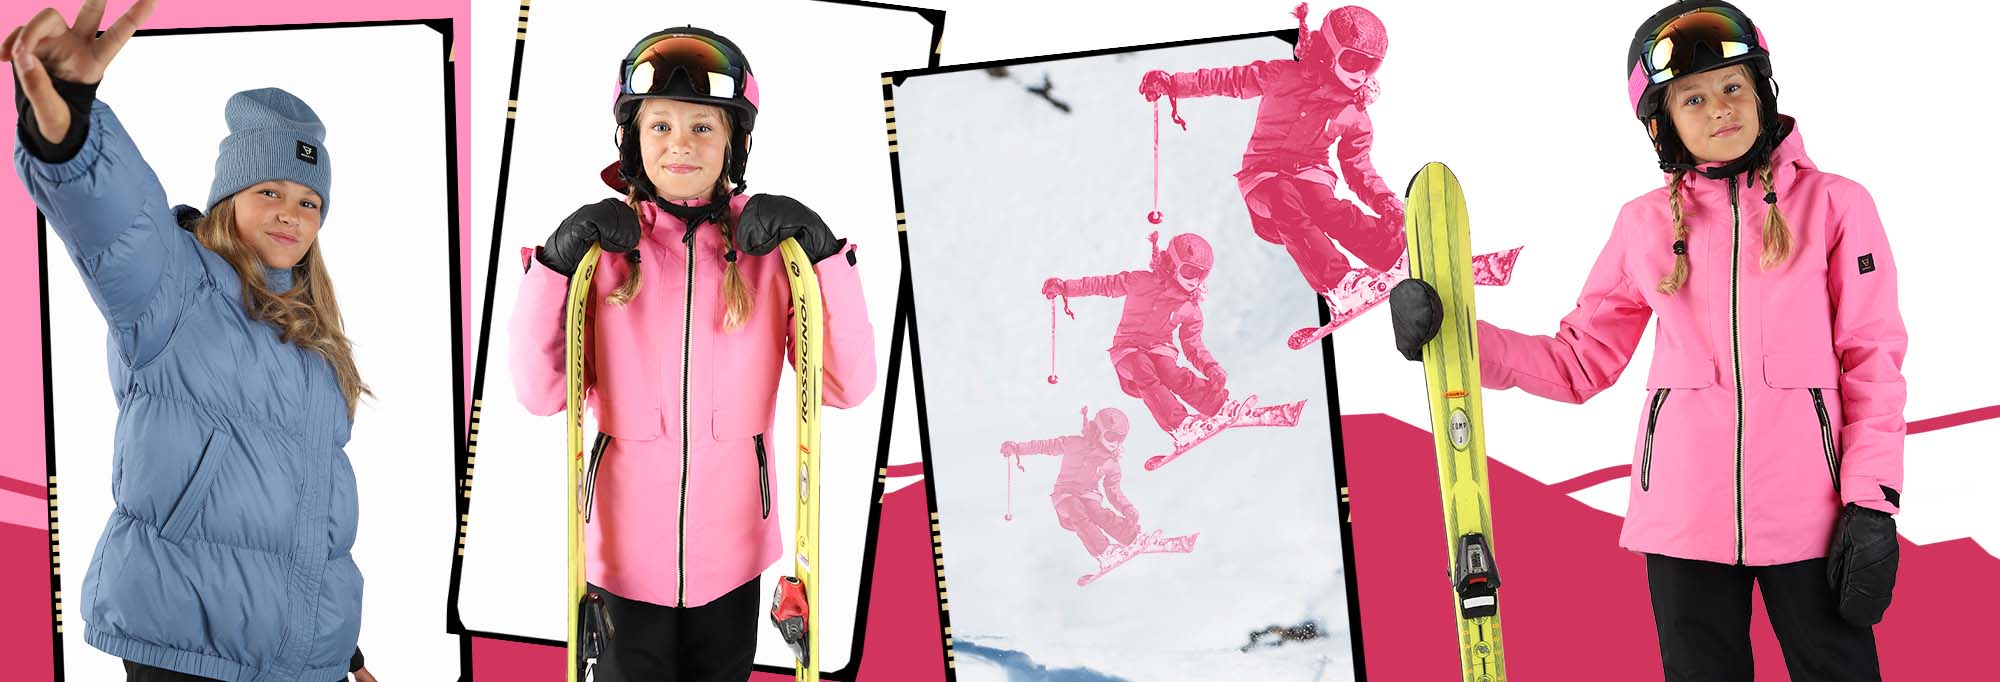 meisjes op de skihut dragen skibroek van Brunotti en ook een ski salopette.